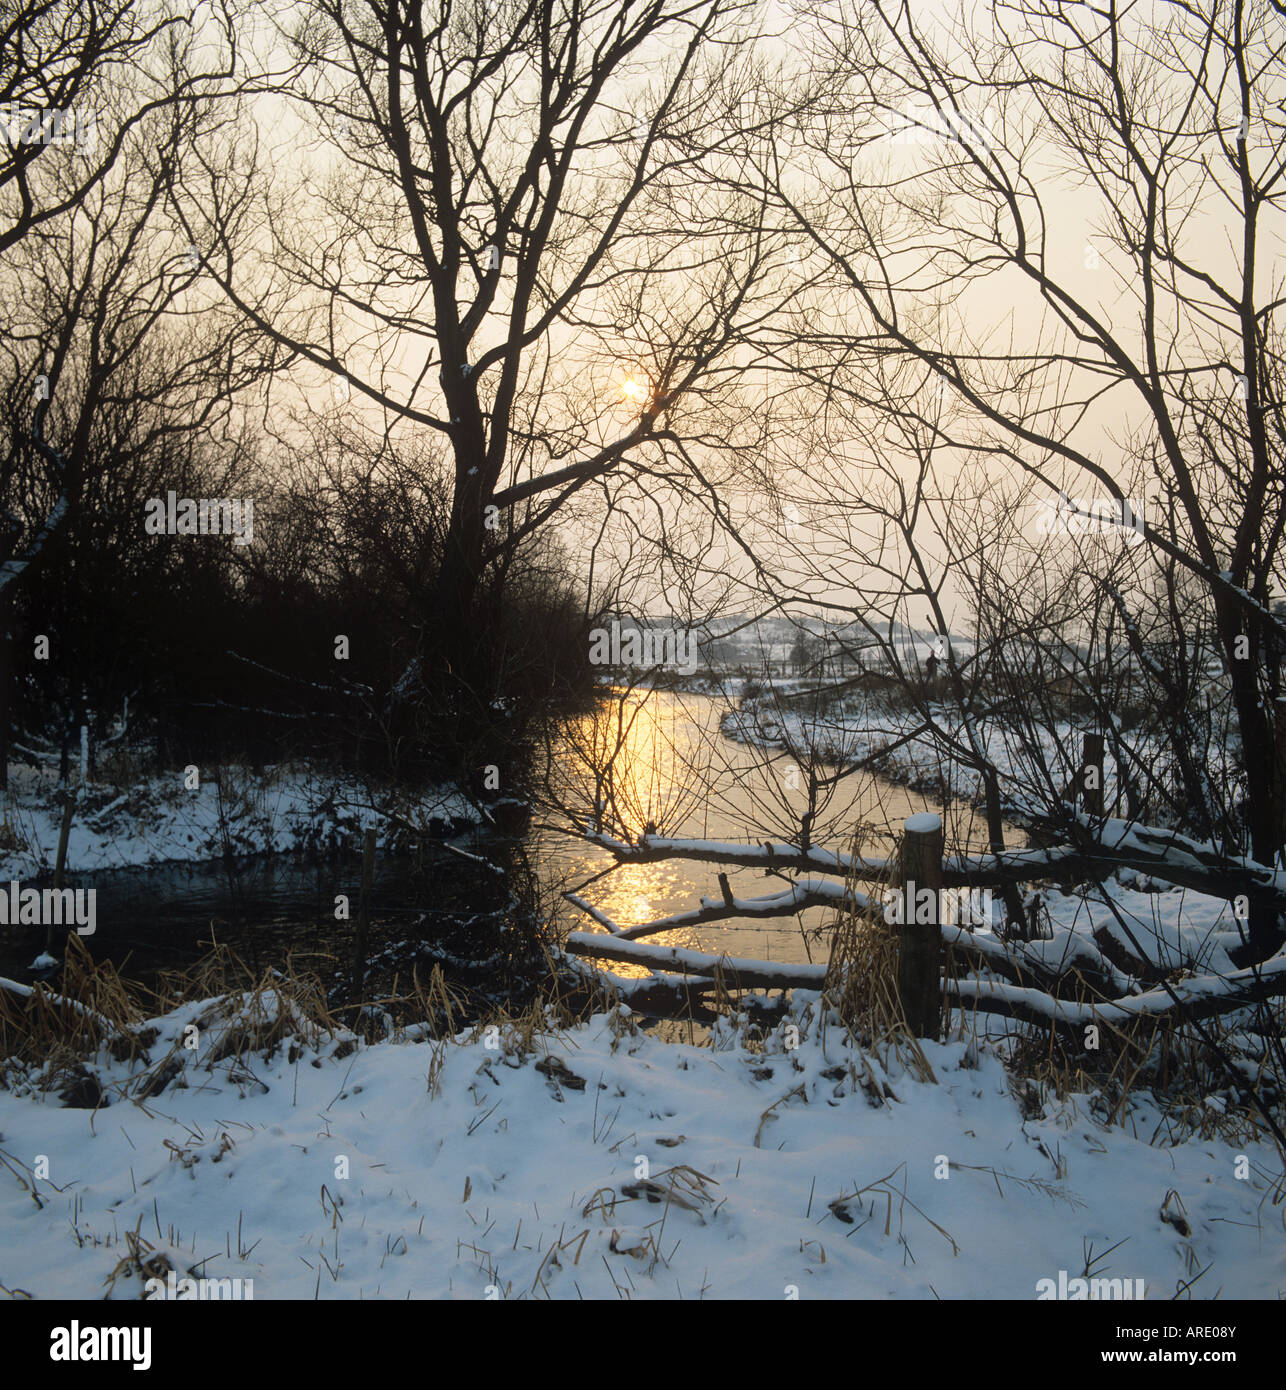 Fluß Kennet Hungerford und Sumpfgebiet mit Schnee bedeckt auf Bäume und Banken in der Abend-Sonne Stockfoto